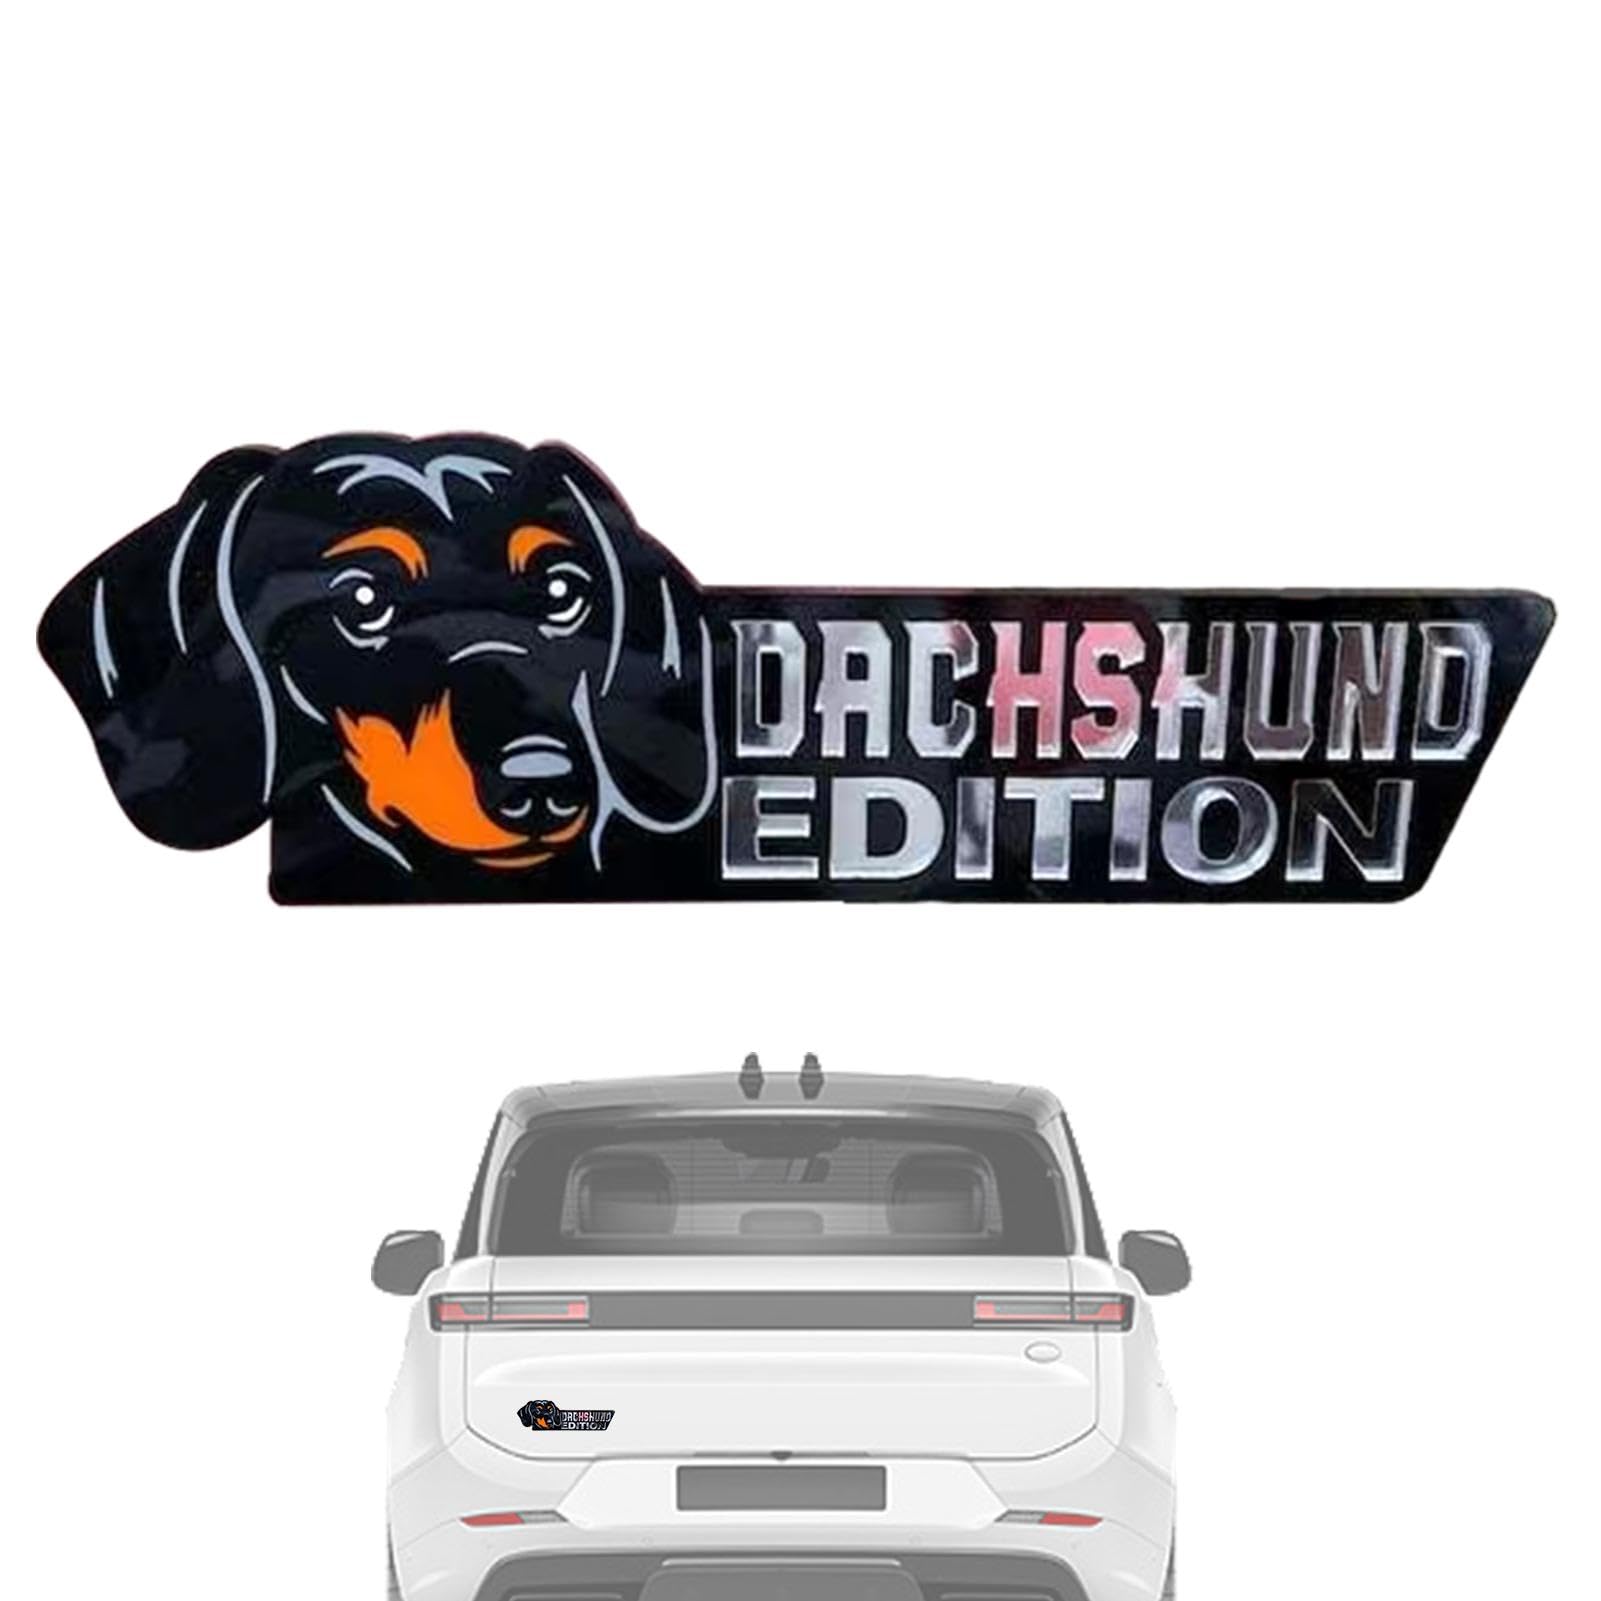 Fecfucy Hunde-Emblem für Auto – 3D-Acryl-Hunde-Auto-Aufkleber, Auto-Aufkleber, Auto-Aufkleber und Aufkleber für Auto, LKW, Wohnmobil, Boot, Außendekoration von Fecfucy